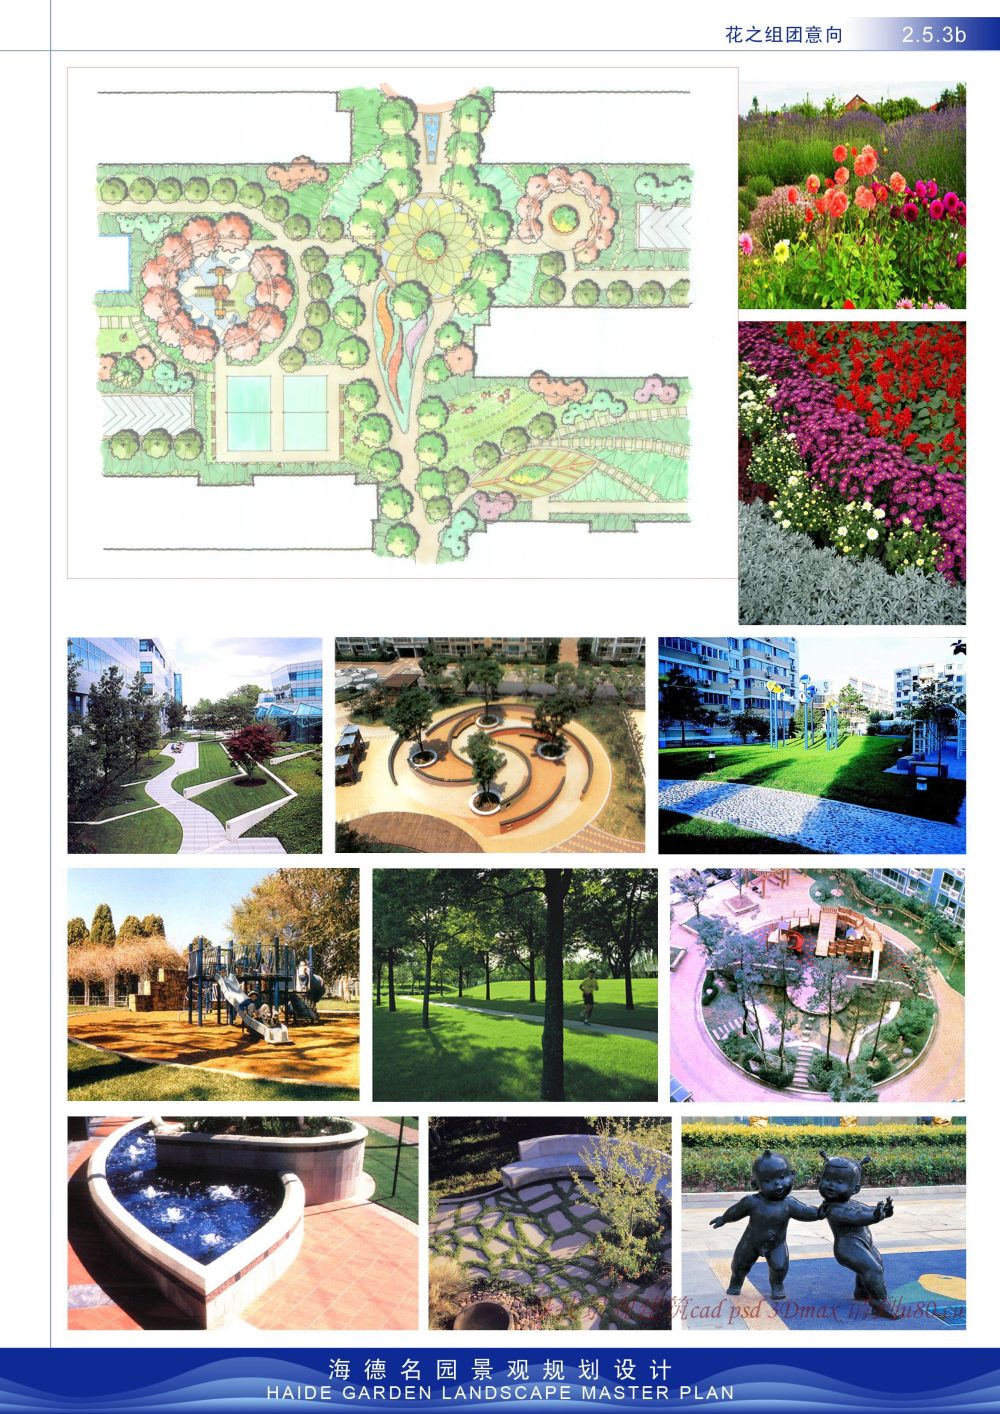 重发海德名园景观规划设计（优）_2.5.03b.jpg